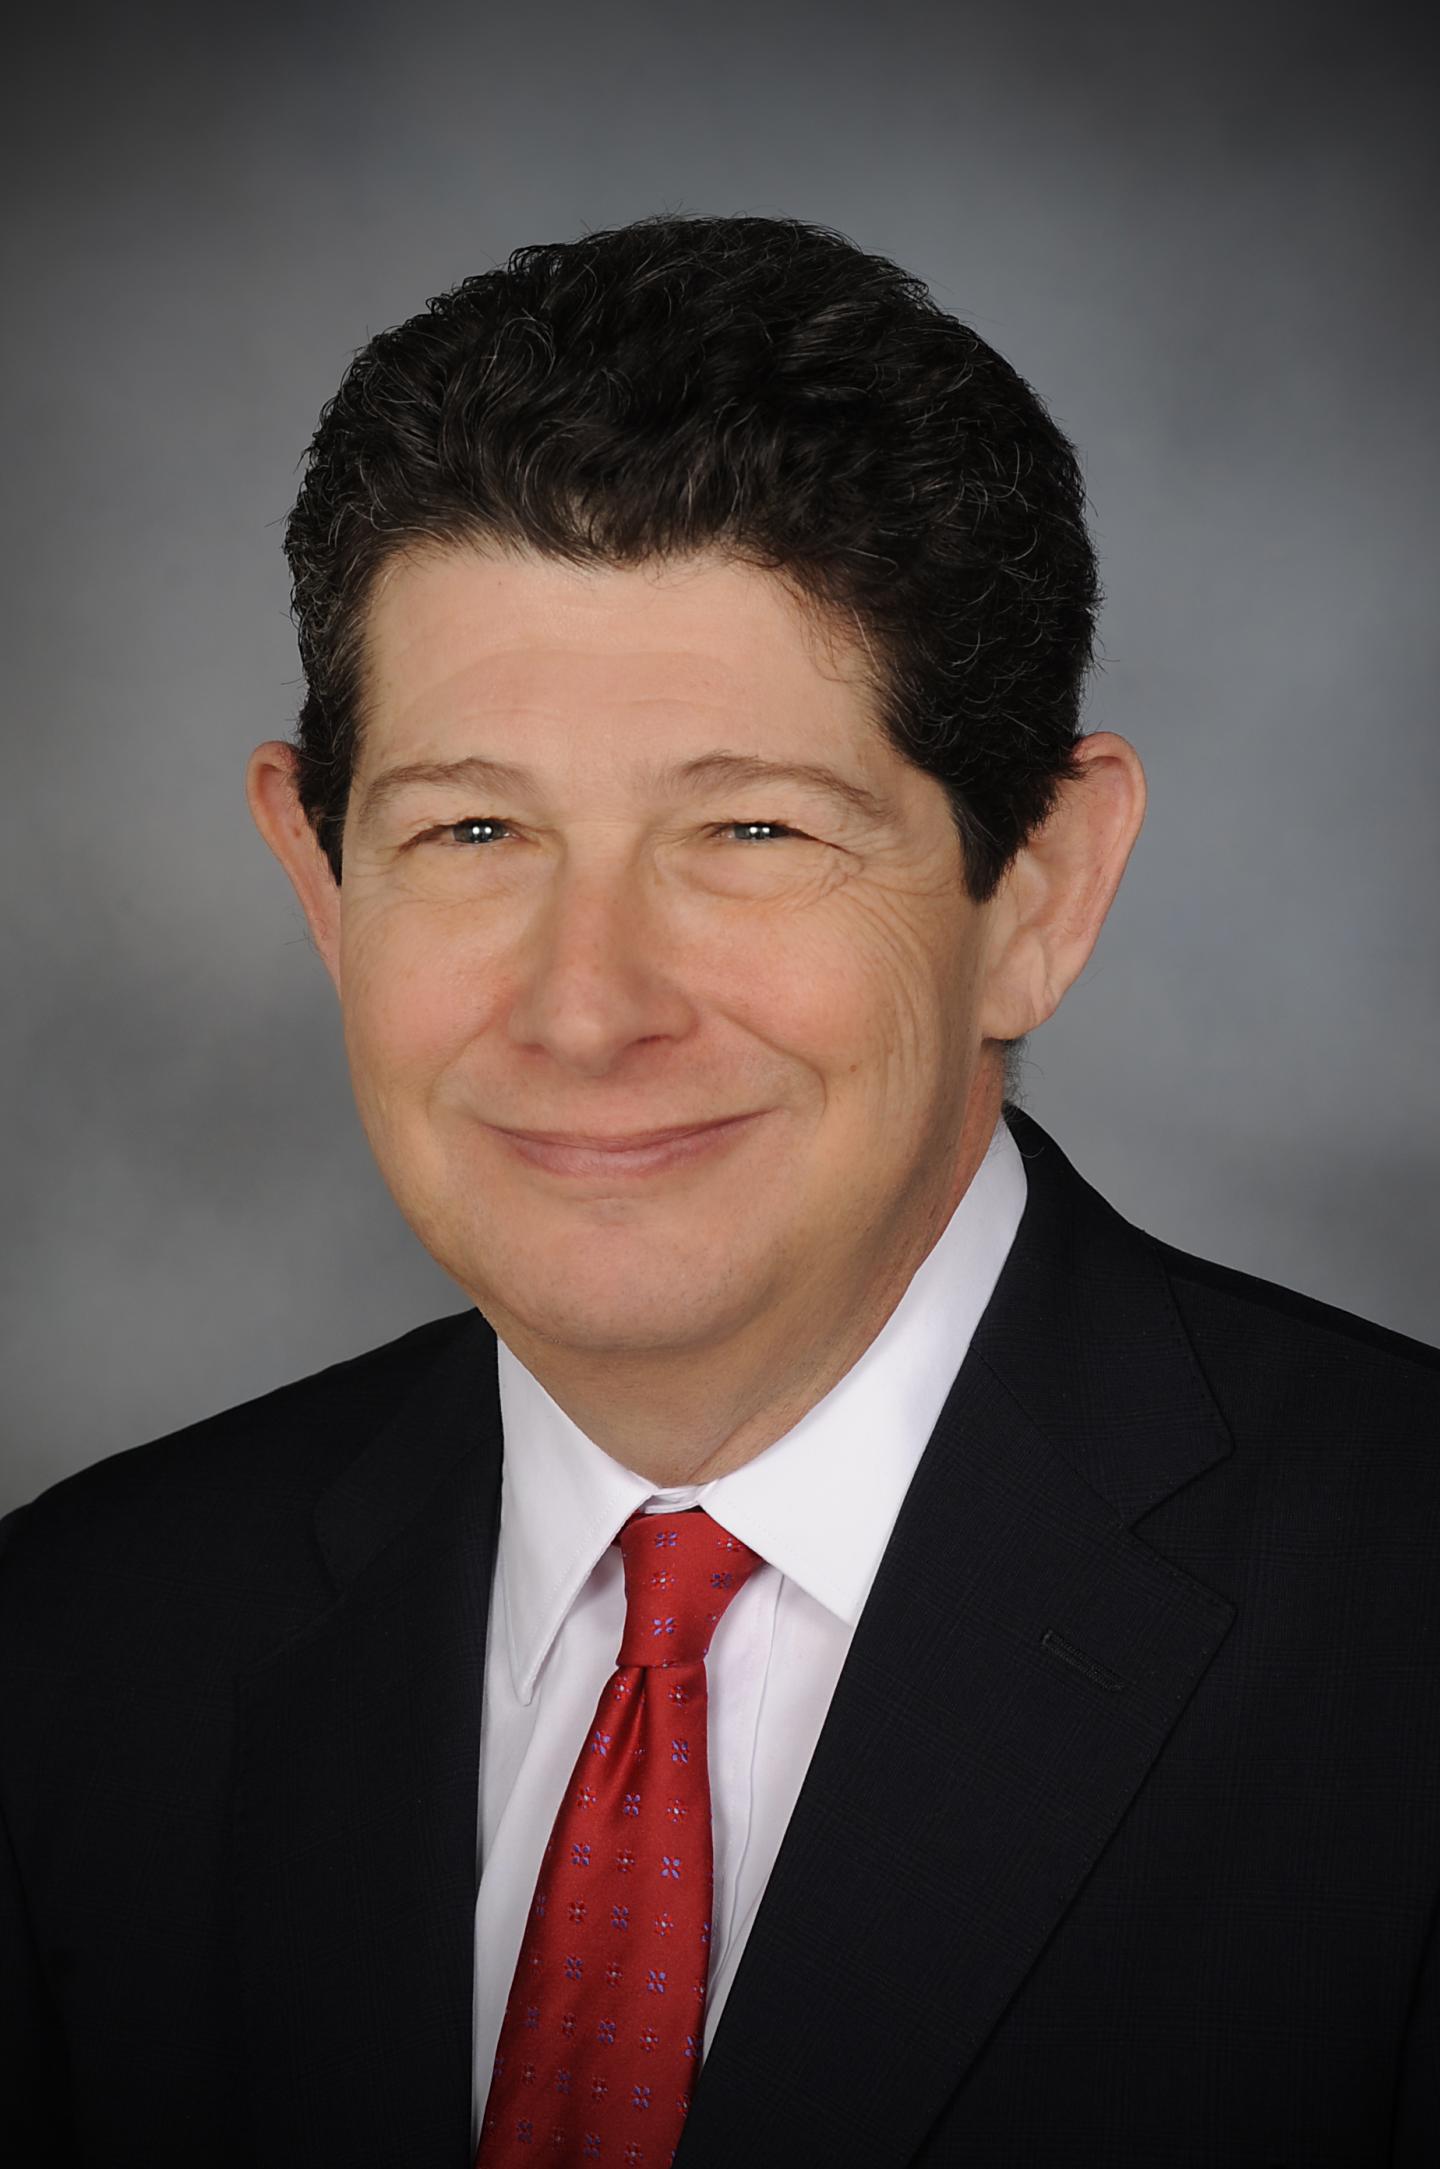 Jon B. Klein, University of Louisville